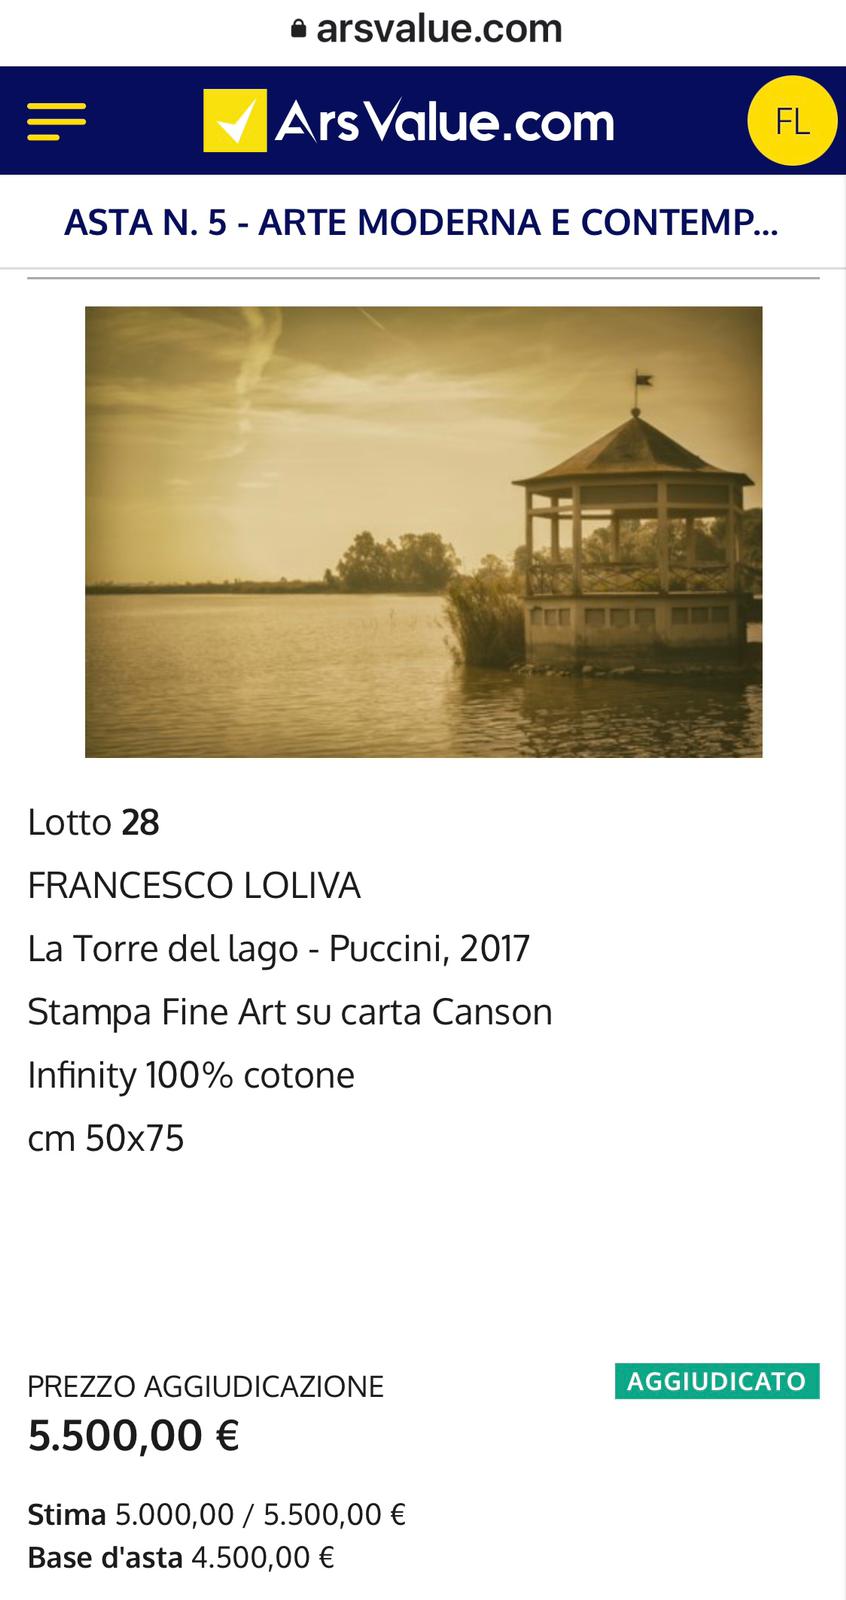 8 GENNAIO 2021 - https://www.arsvalue.com/it/lotti/540905/francesco-loliva-la-torre-del-lago-puccini-2017?nav=True